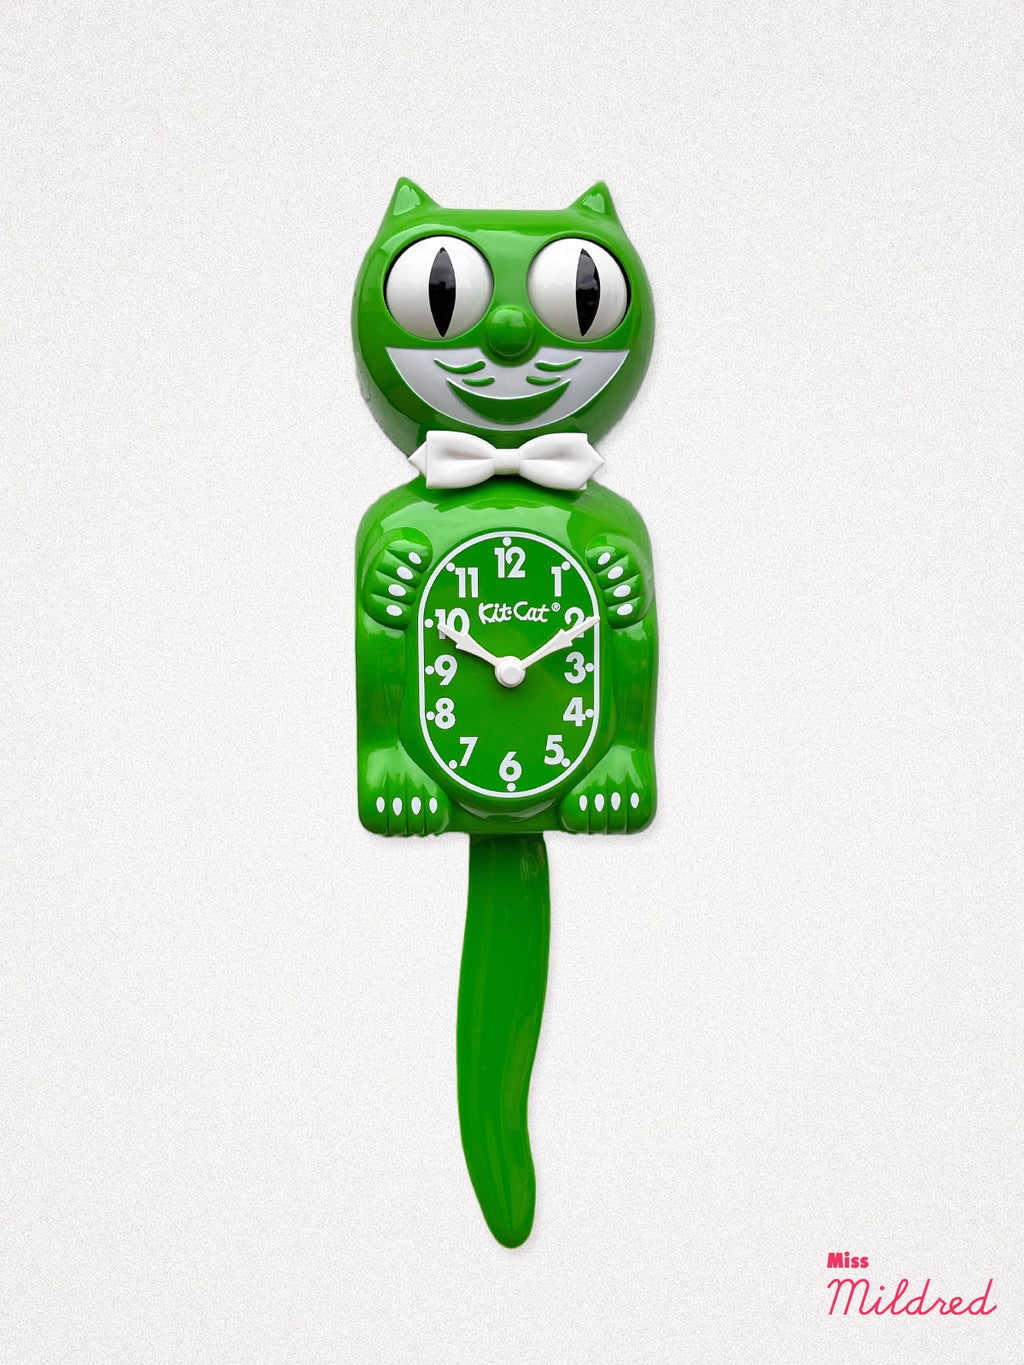 Kit Cat Clock - Original Large Size - Grass Green